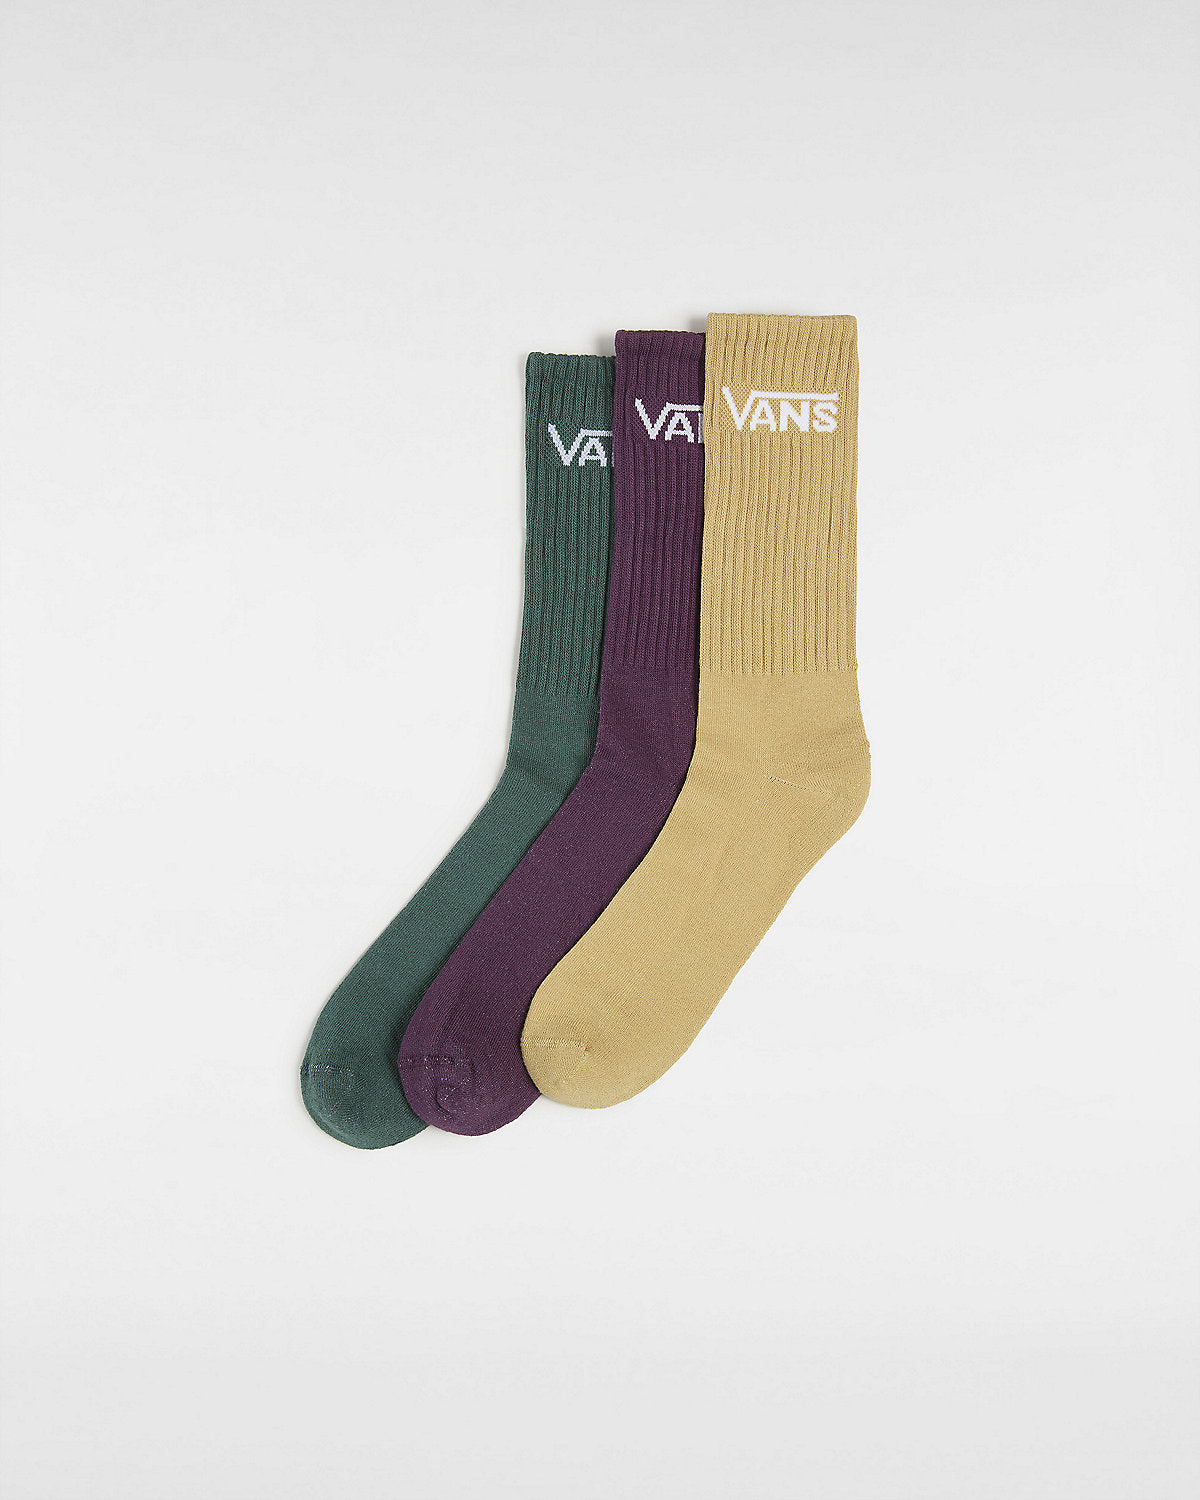 VANS Mens Classic Crew Socks (3 Pairs) - Antelope / Green / Red